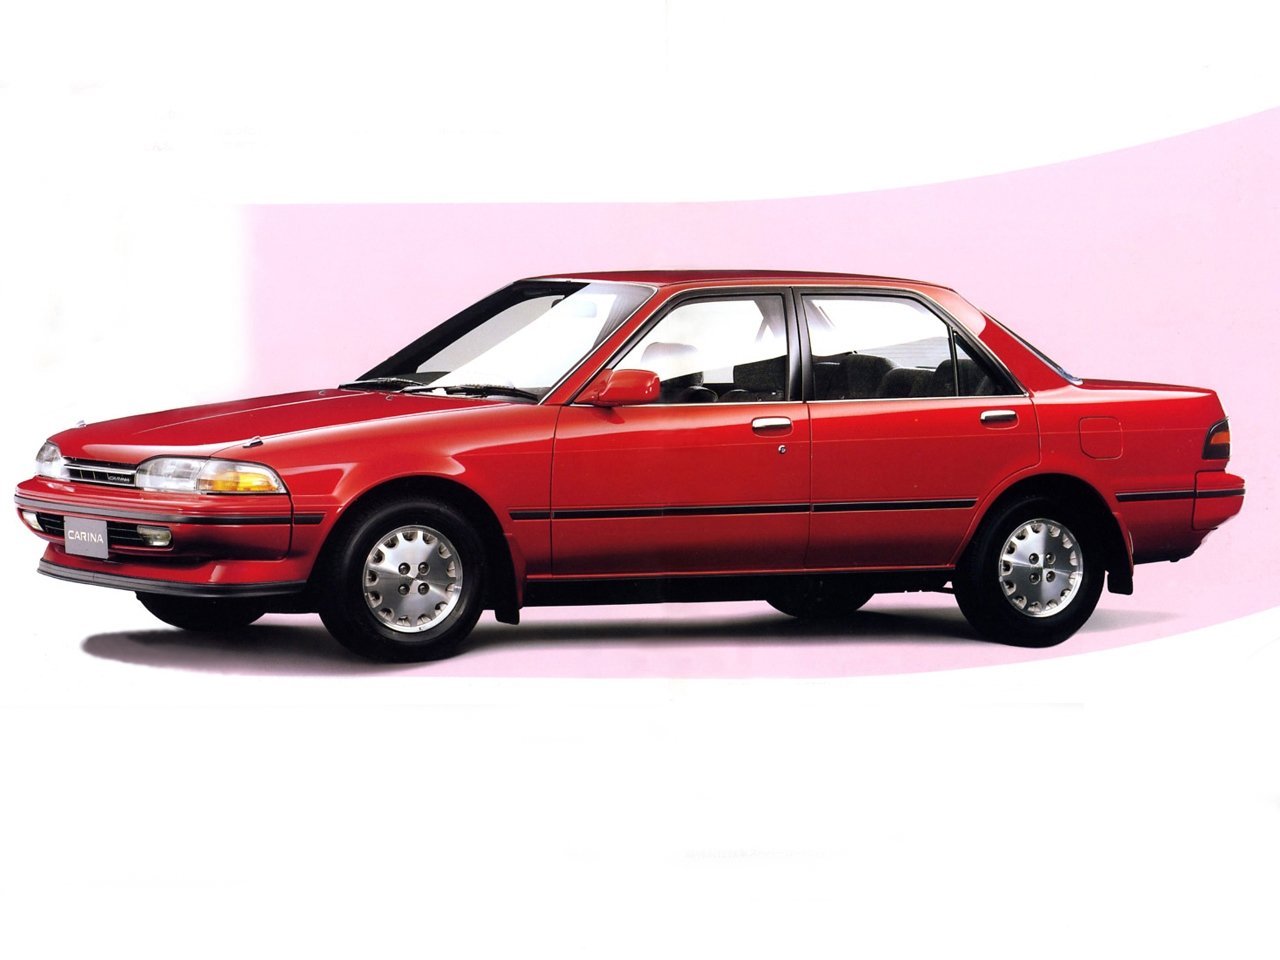 седан Toyota Carina 1988 - 1992г выпуска модификация 1.5 AT (85 л.с.)